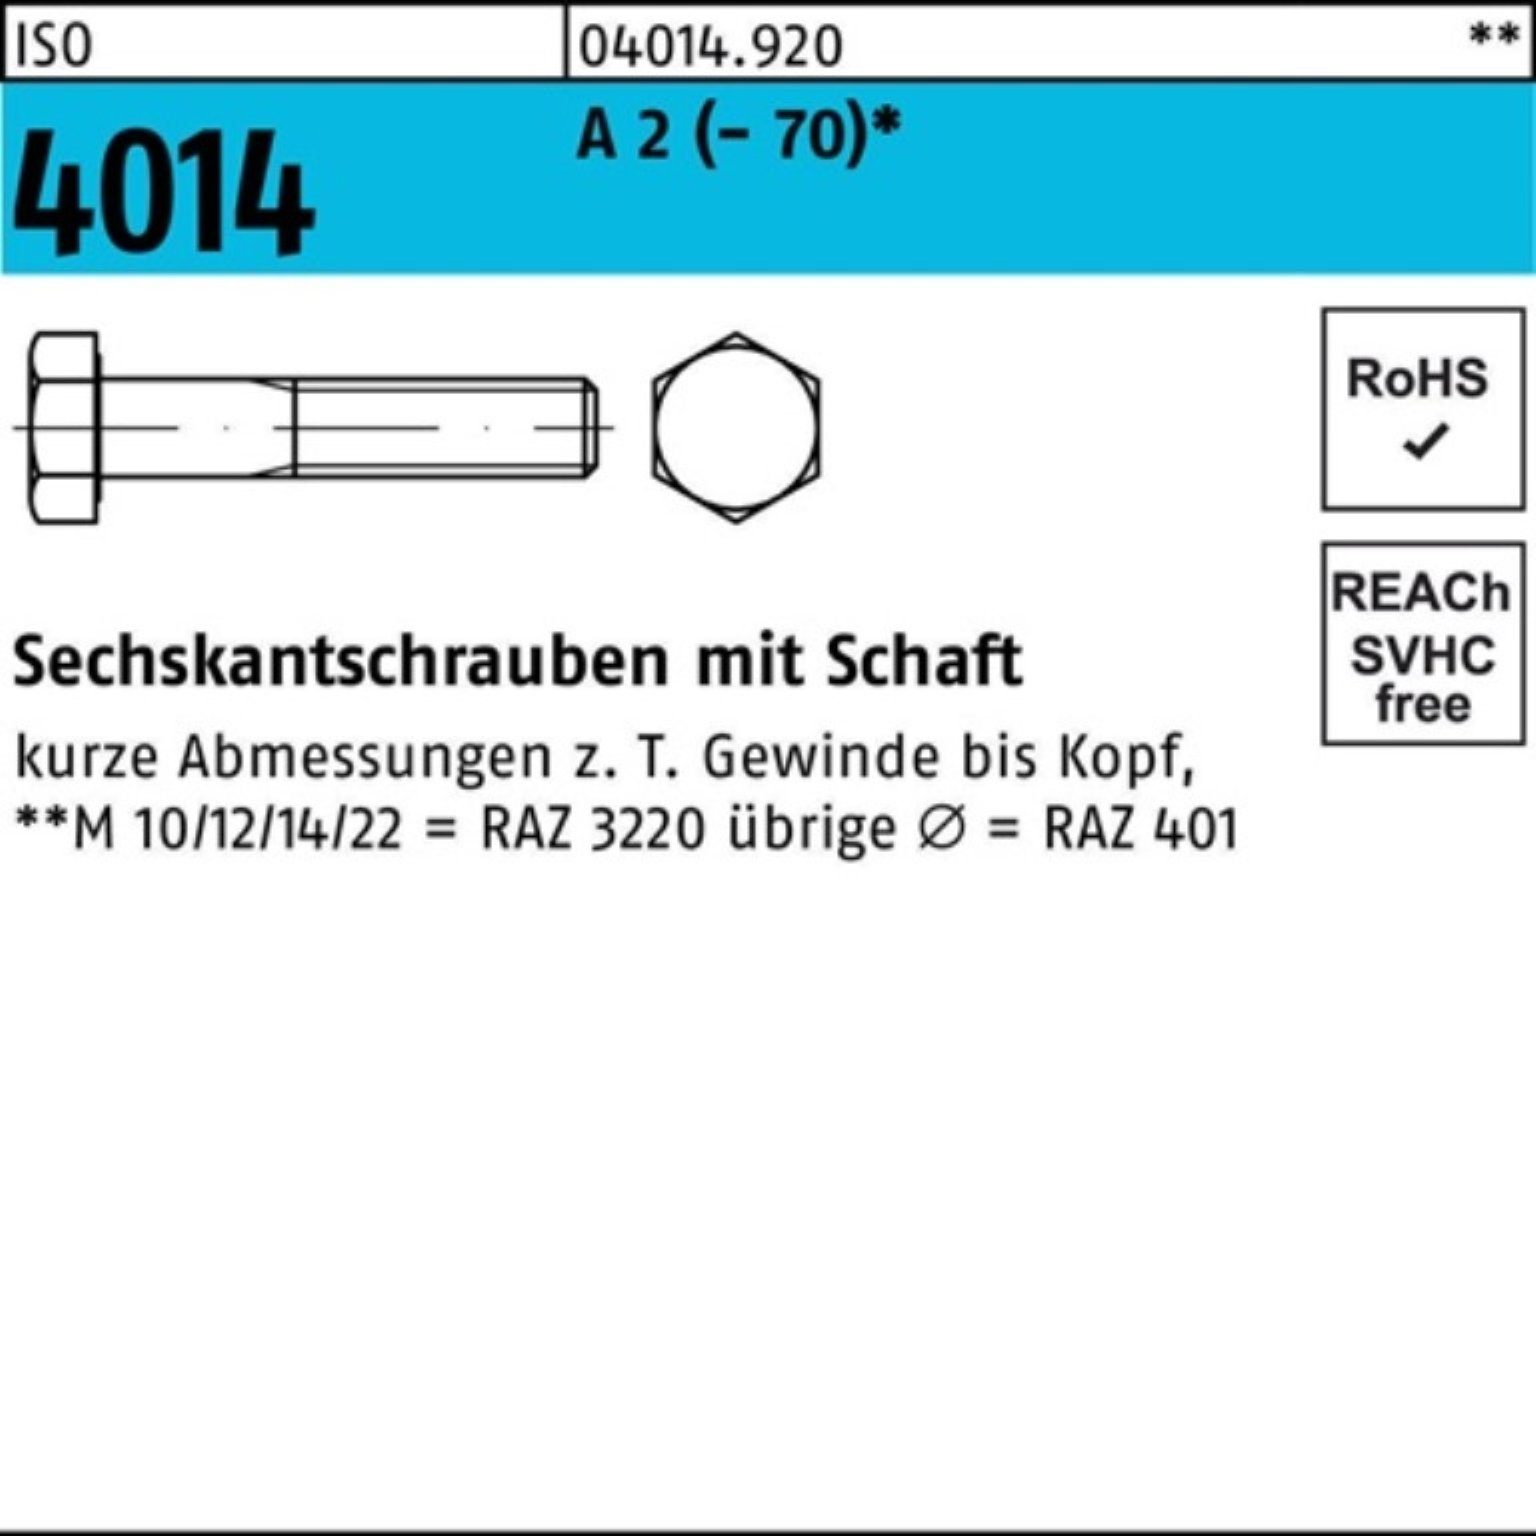 Bufab Sechskantschraube 100er Pack Sechskantschraube 2 1 Schaft A 4014 M16x (70) ISO 250 St